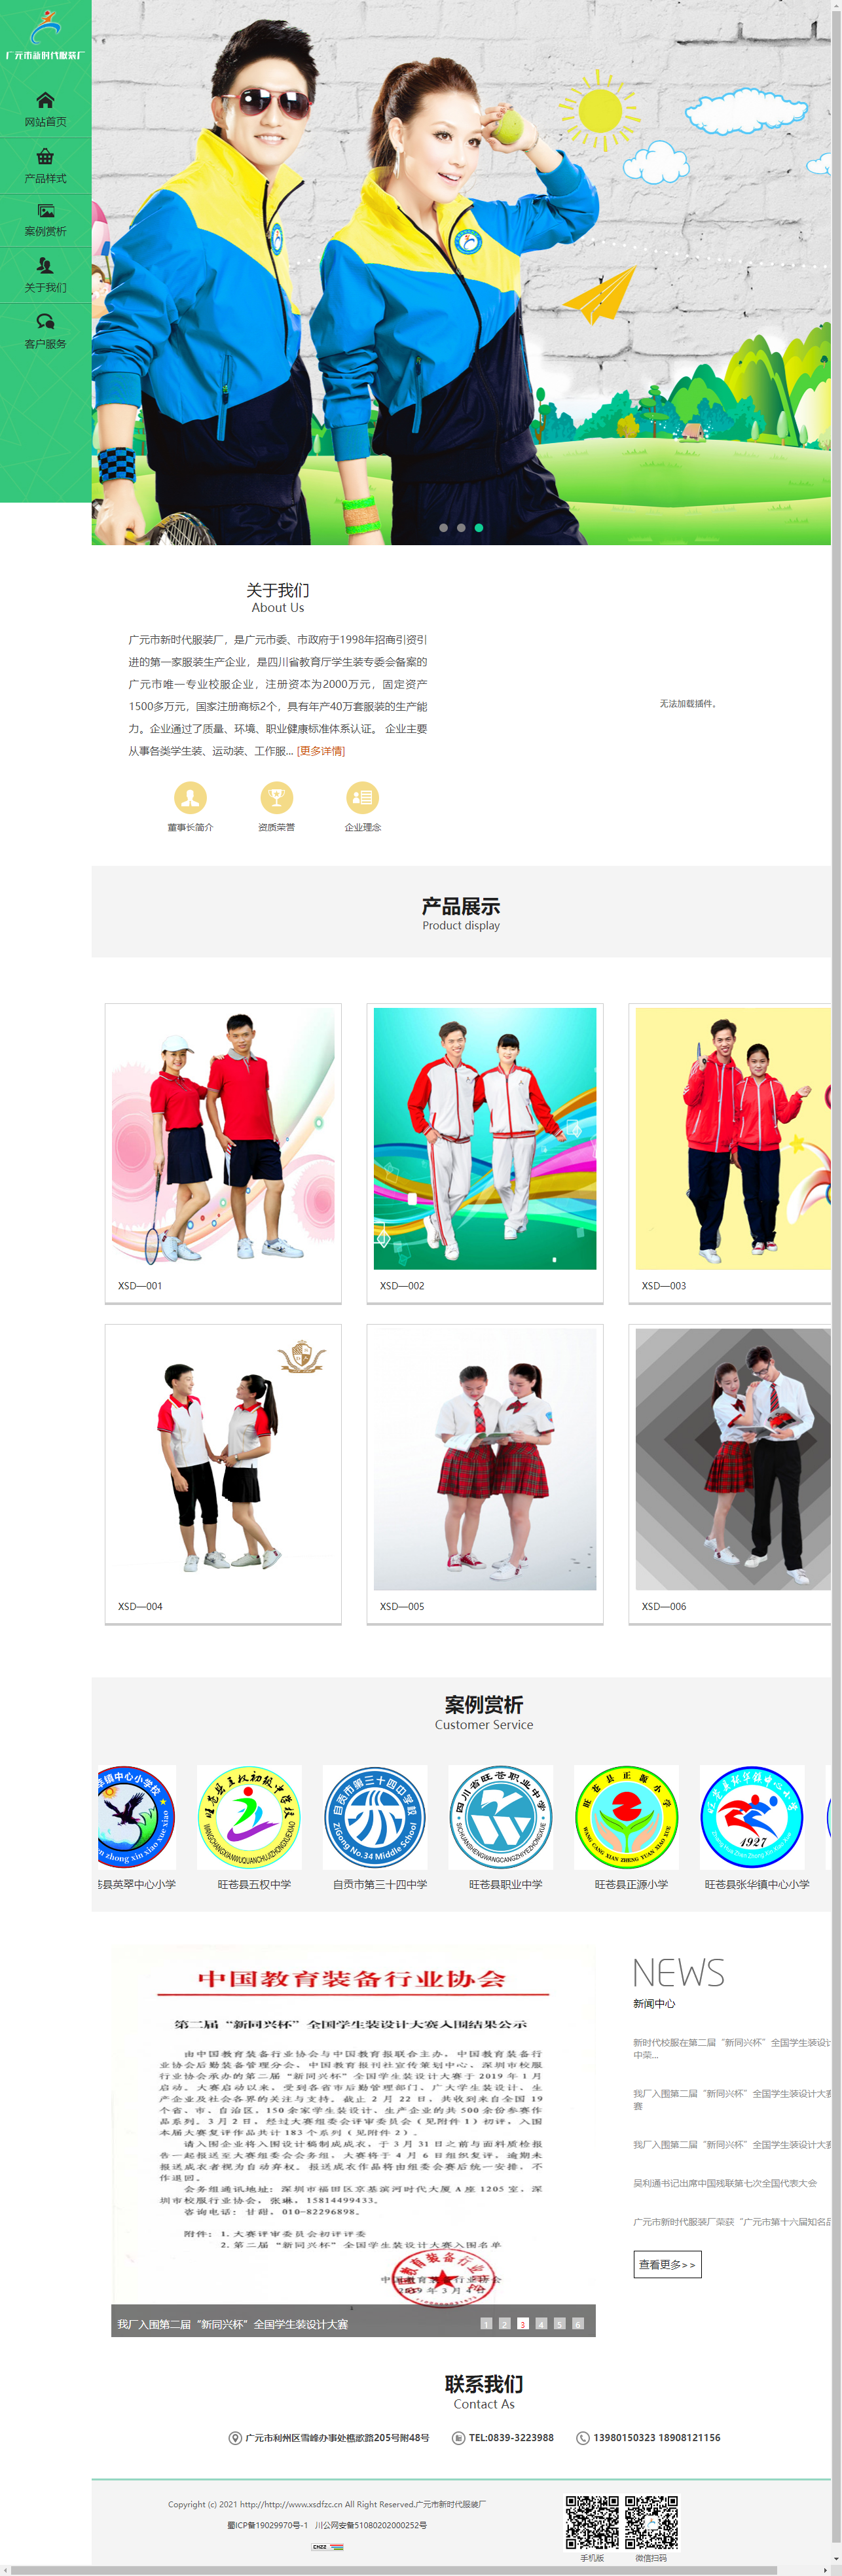 广元市新时代服装厂网站案例